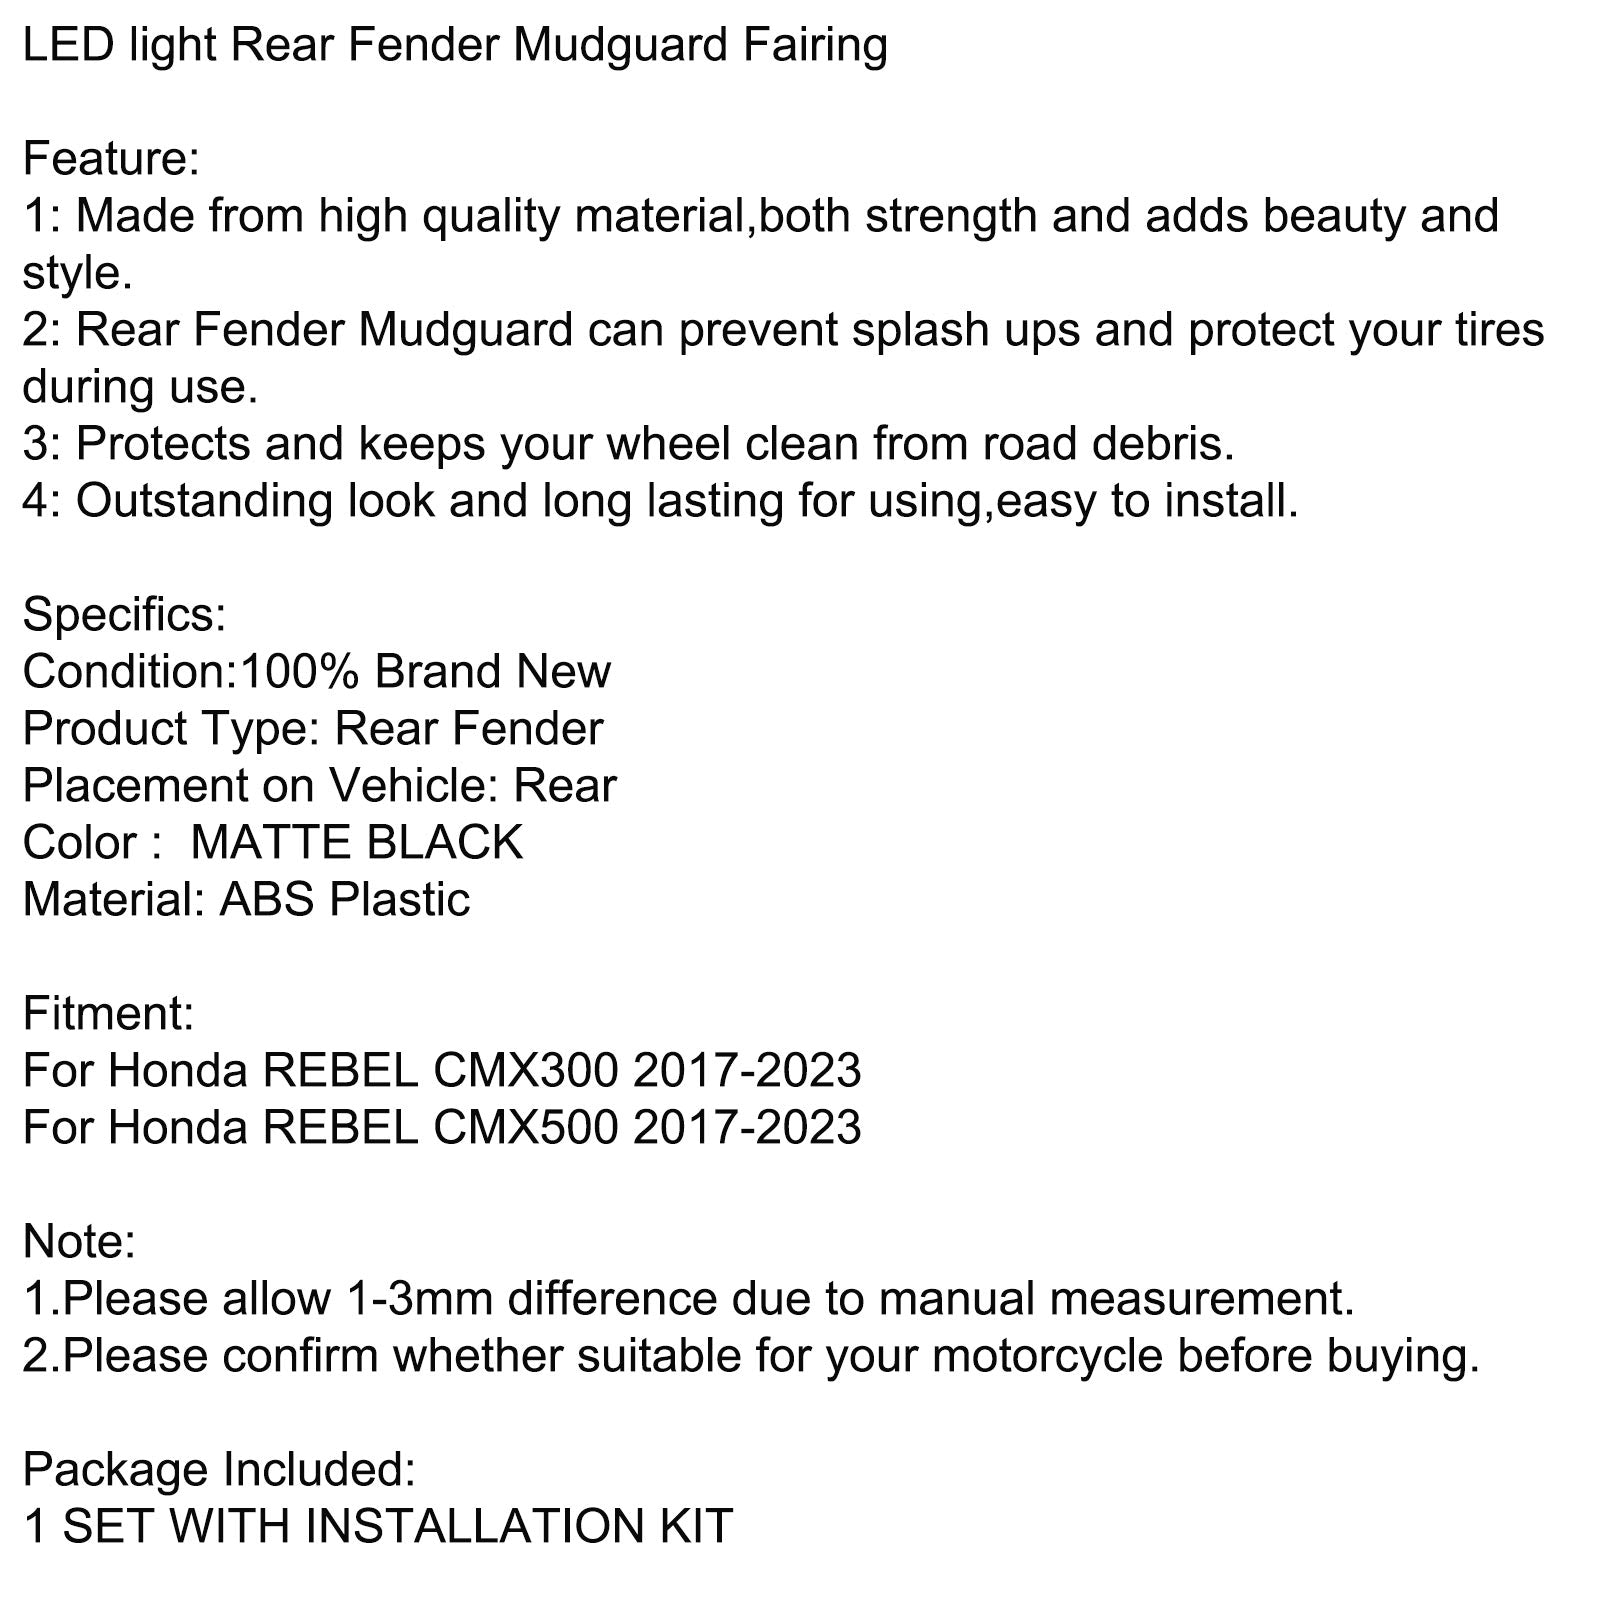 LED light Rear Fender Mudguard Fairing For Honda REBEL CMX 300 500 2017-2023